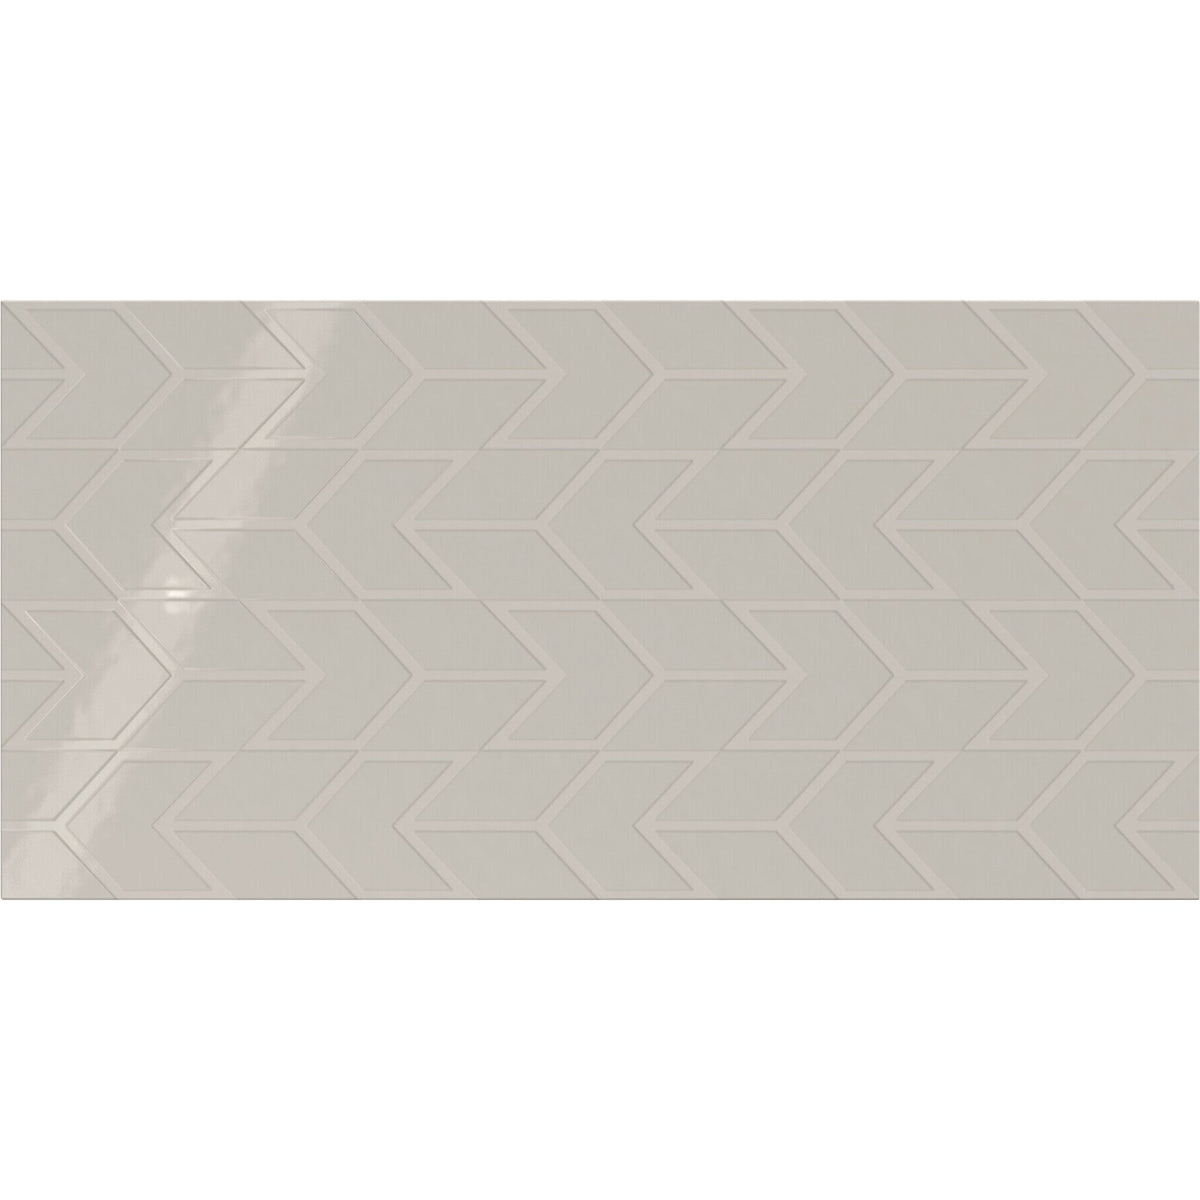 Daltile - Showscape - 12 in. x 24 in. Chevron Glazed Ceramic Wall Tile - Soft Gray